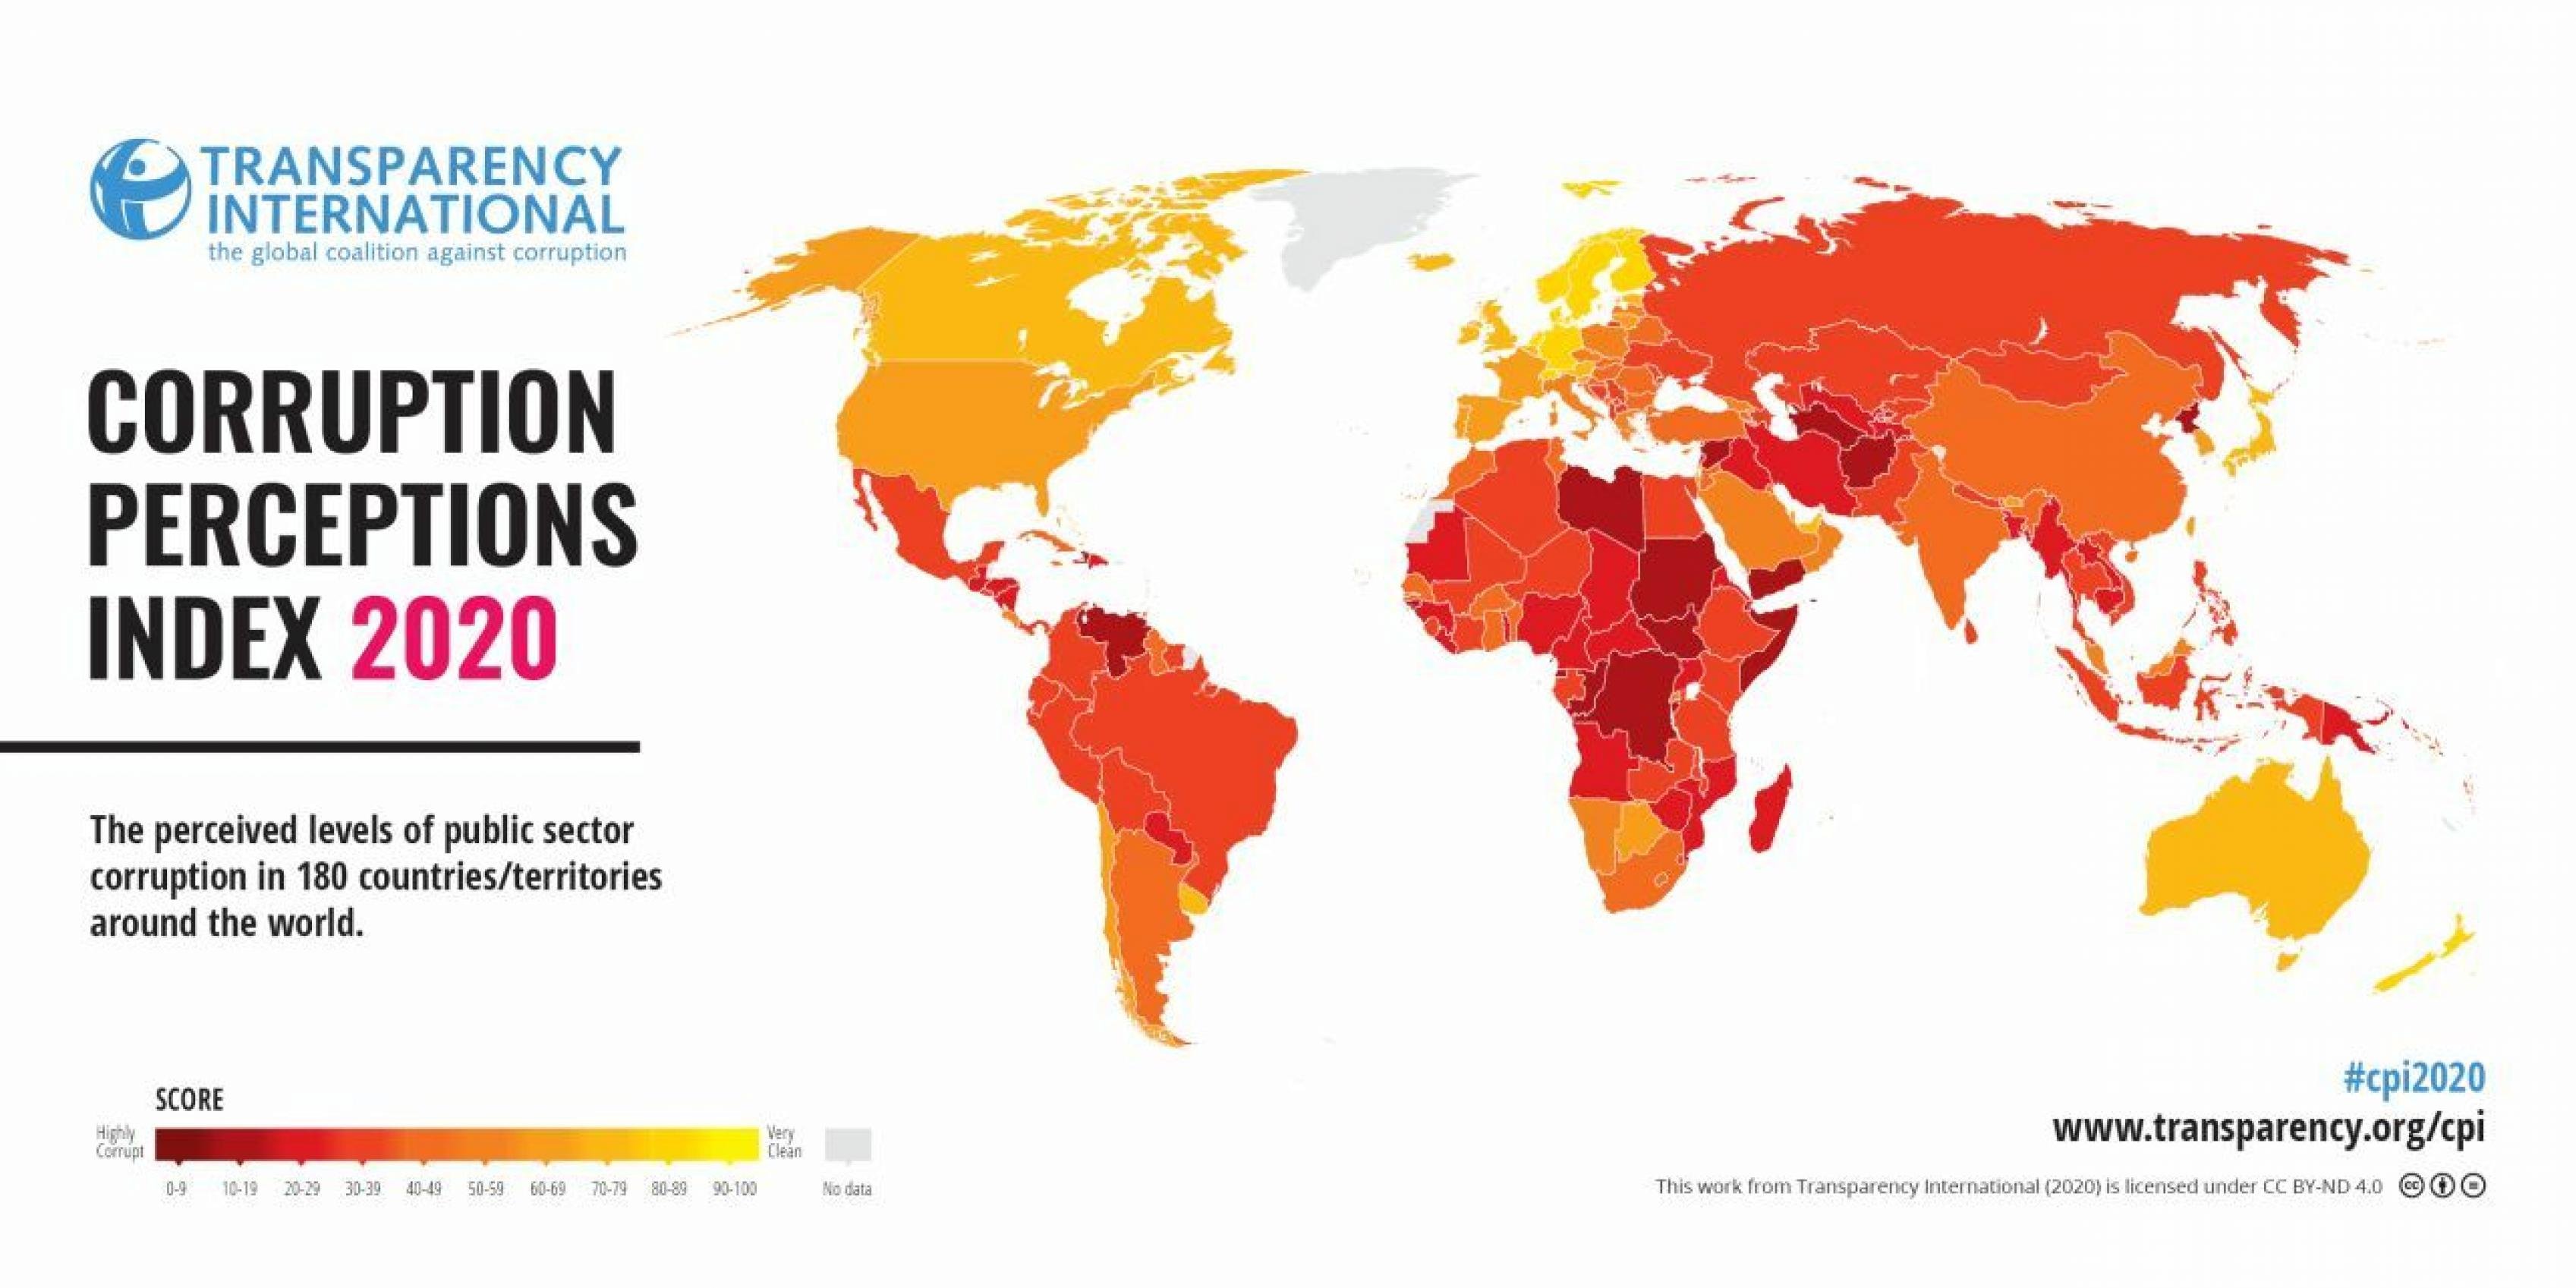 Die Weltkarte zeigt 180 Länder in verschiedenen Tönen von Dunkelrot bis Gelb. In Südamerika ist Venezuela am schwersten betroffen.